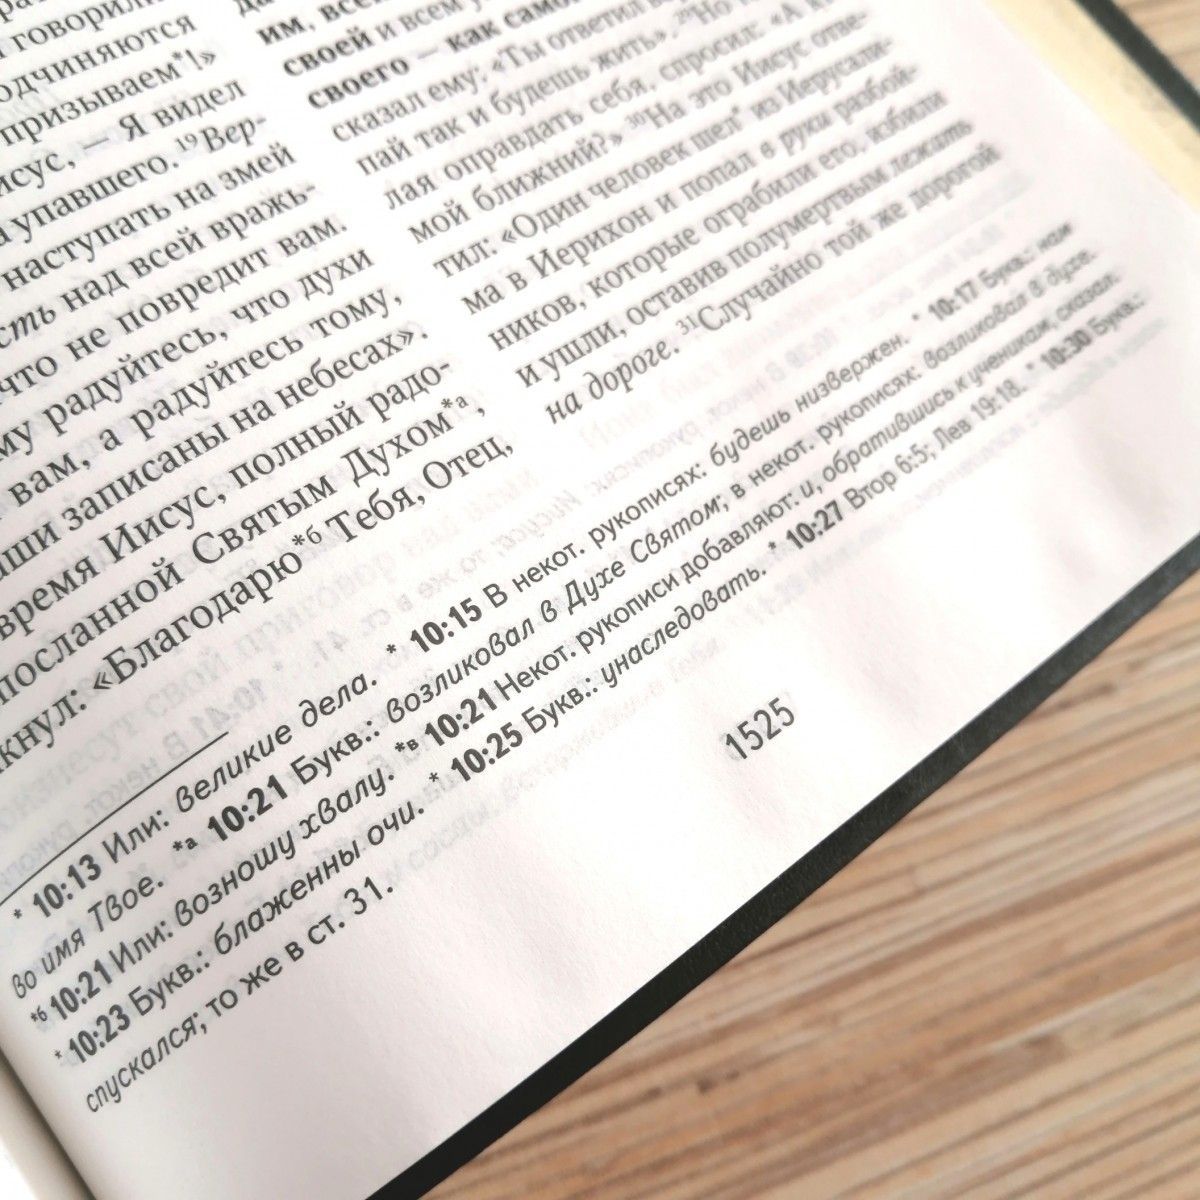 Библия в современном русском переводе 061. под редакцией Кулакова. Кожаный переплет, серебряные страницы, цвет темно-синий